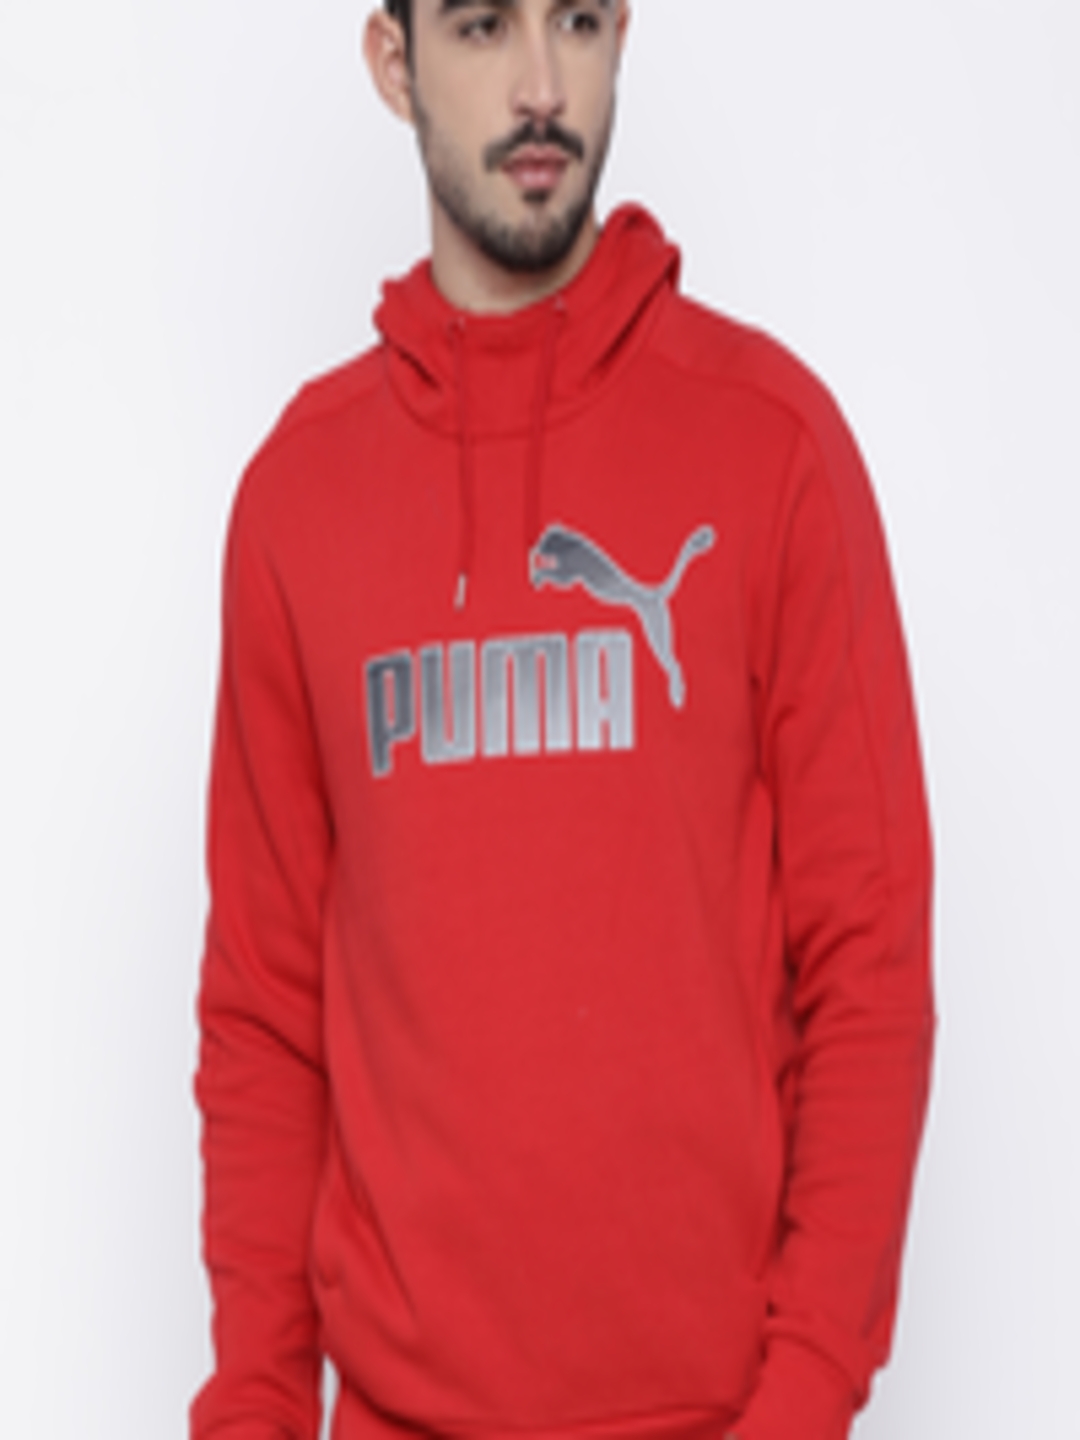 Buy Puma Men Red Printed Hooded Sweatshirt - Sweatshirts for Men ...